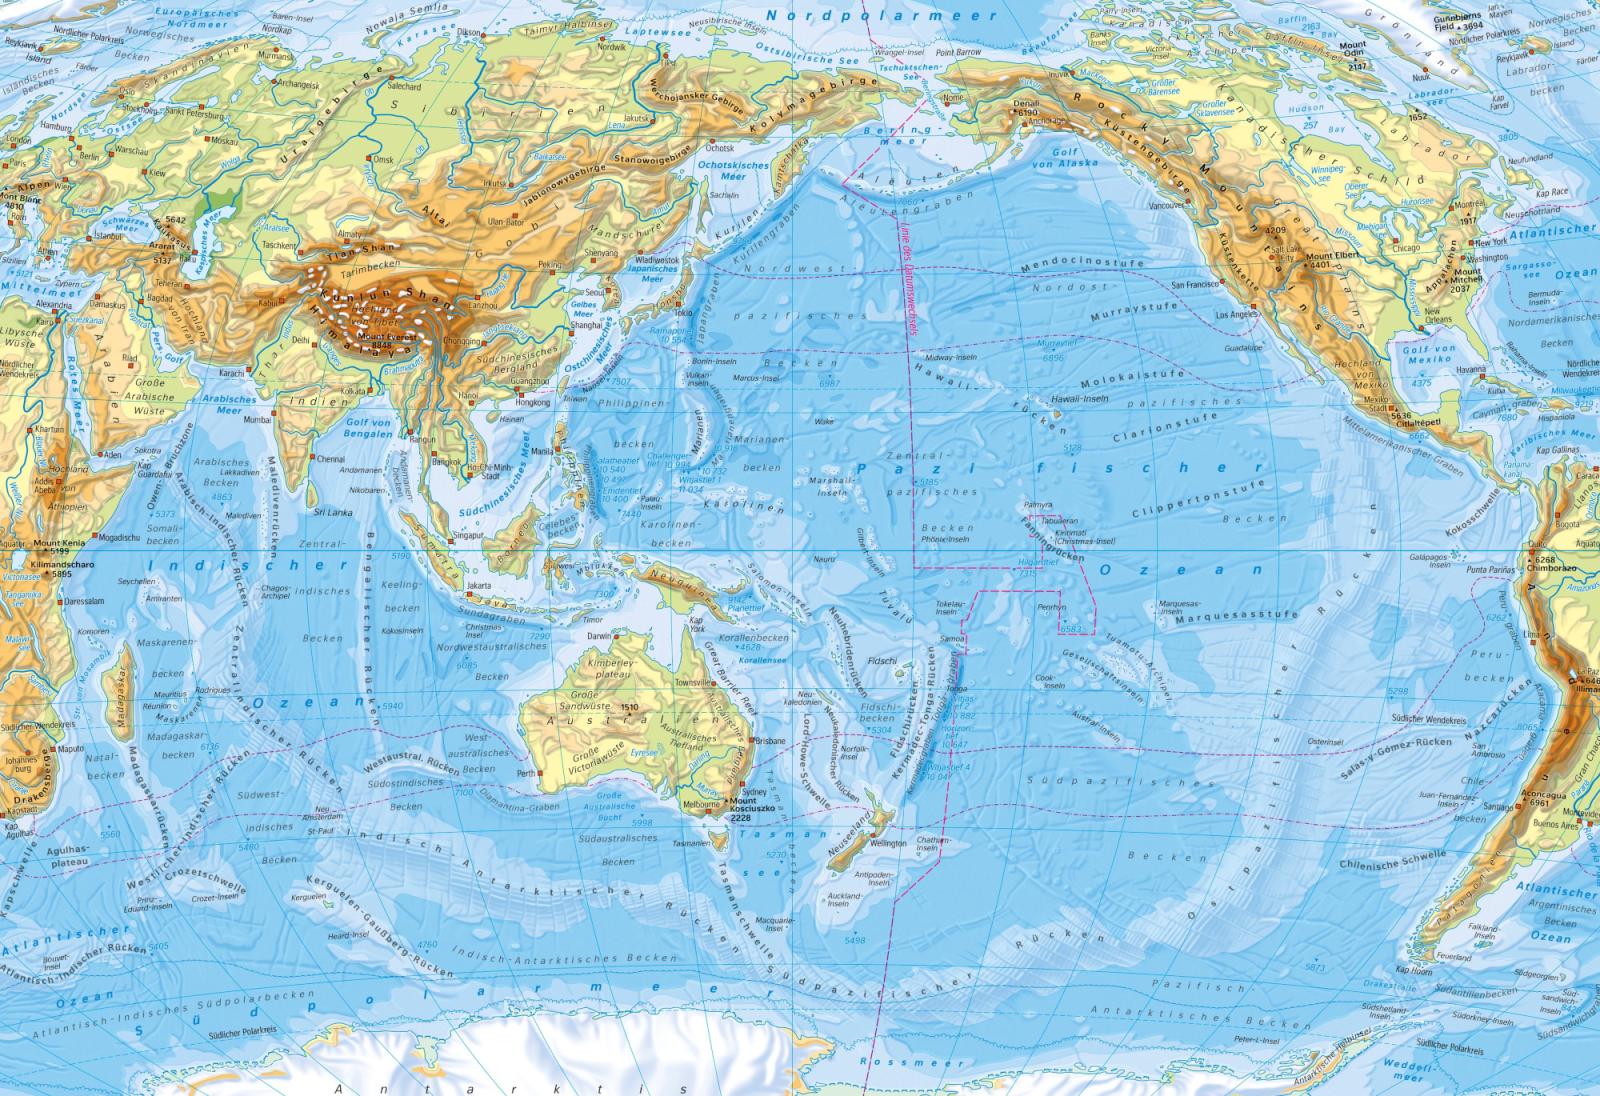 Тихий океан часть материка. Тихий океан на карте. Острова Тихого океана на карте. Карта Тихого океана географическая. Т̊и̊х̊и̊й̊ о̊к̊е̊а̊н̊ н̊а̊ к̊а̊р̊р̊ т̊т̊е̊.